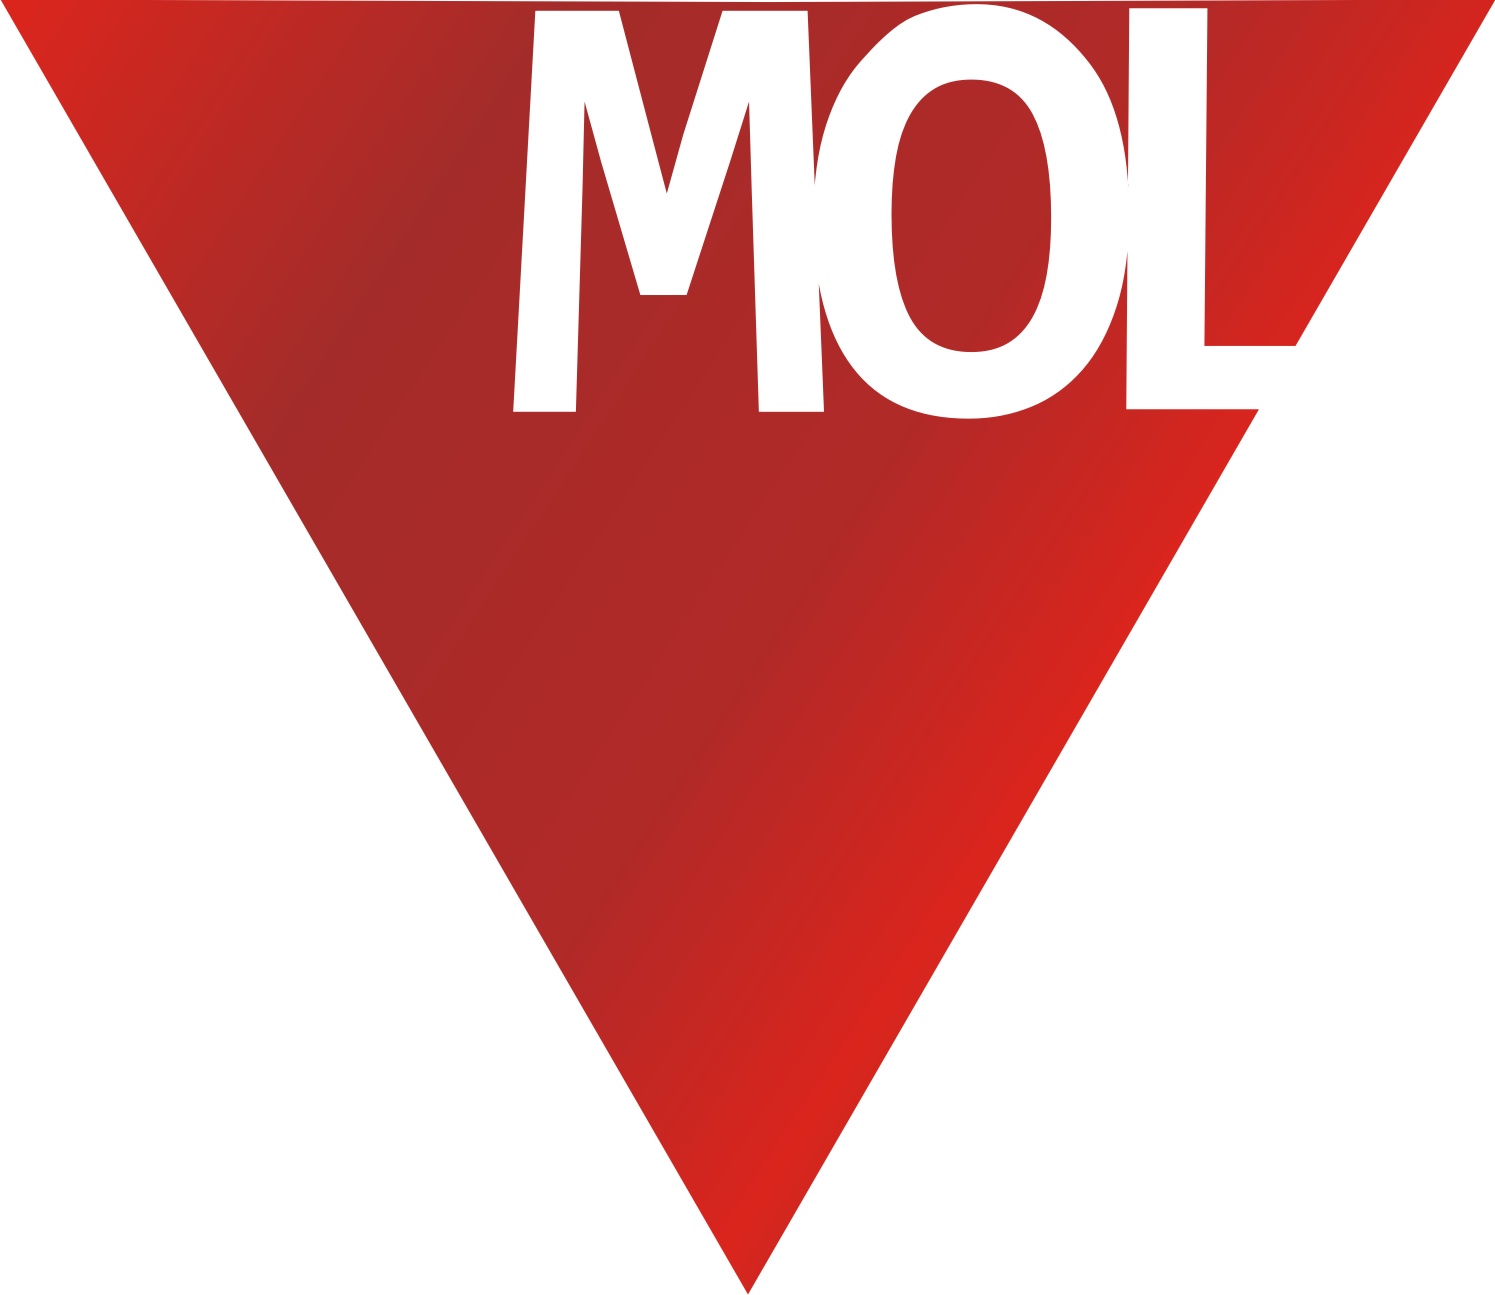  A Mol lezárta az északi-tengeri akvizíciót